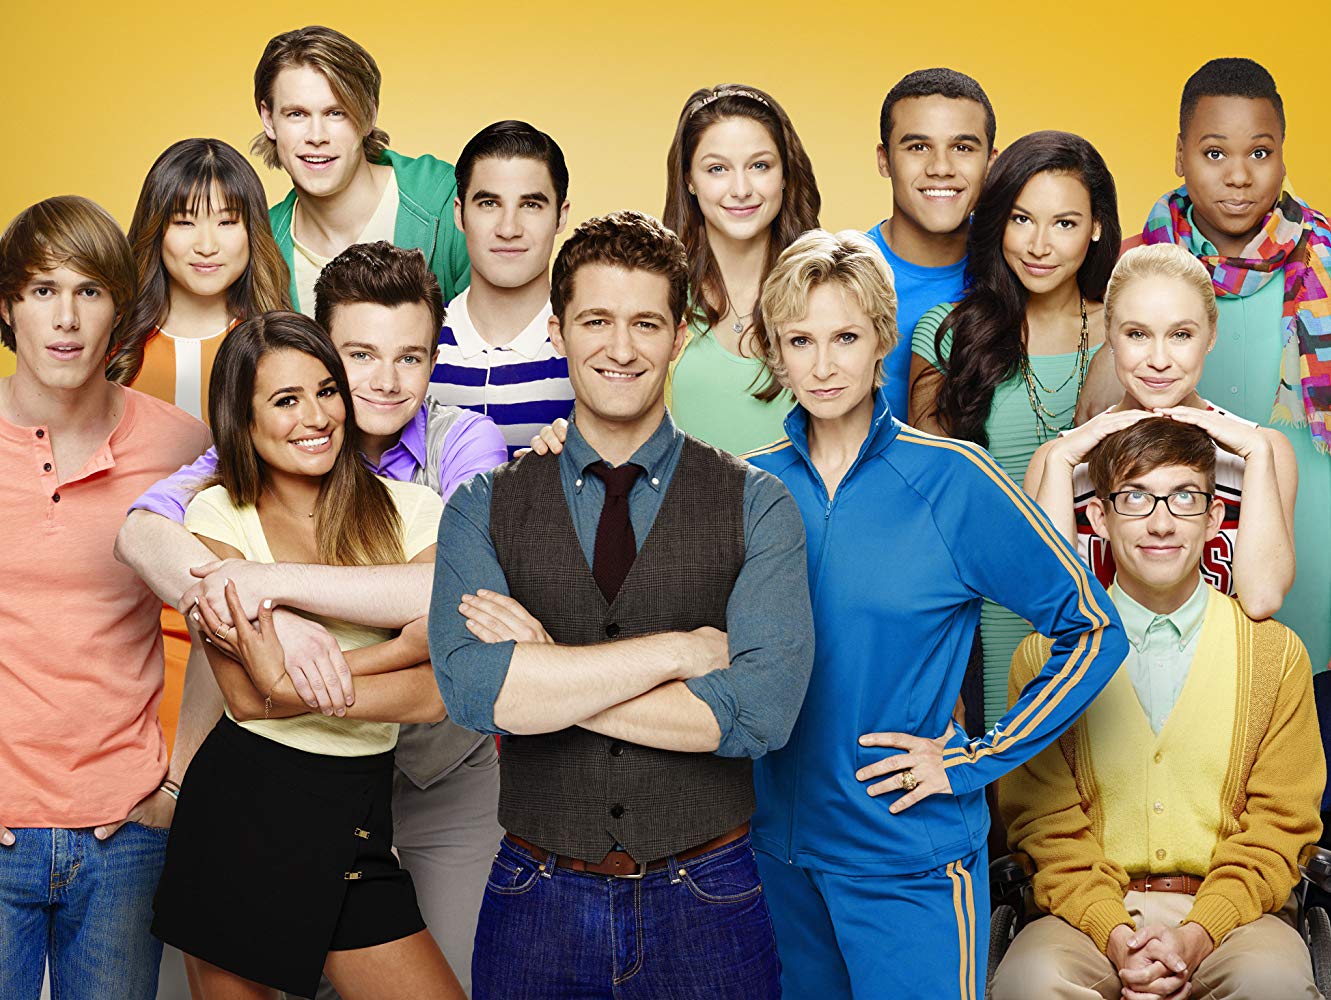 Atriz desaparecida de Glee está “supostamente morta”